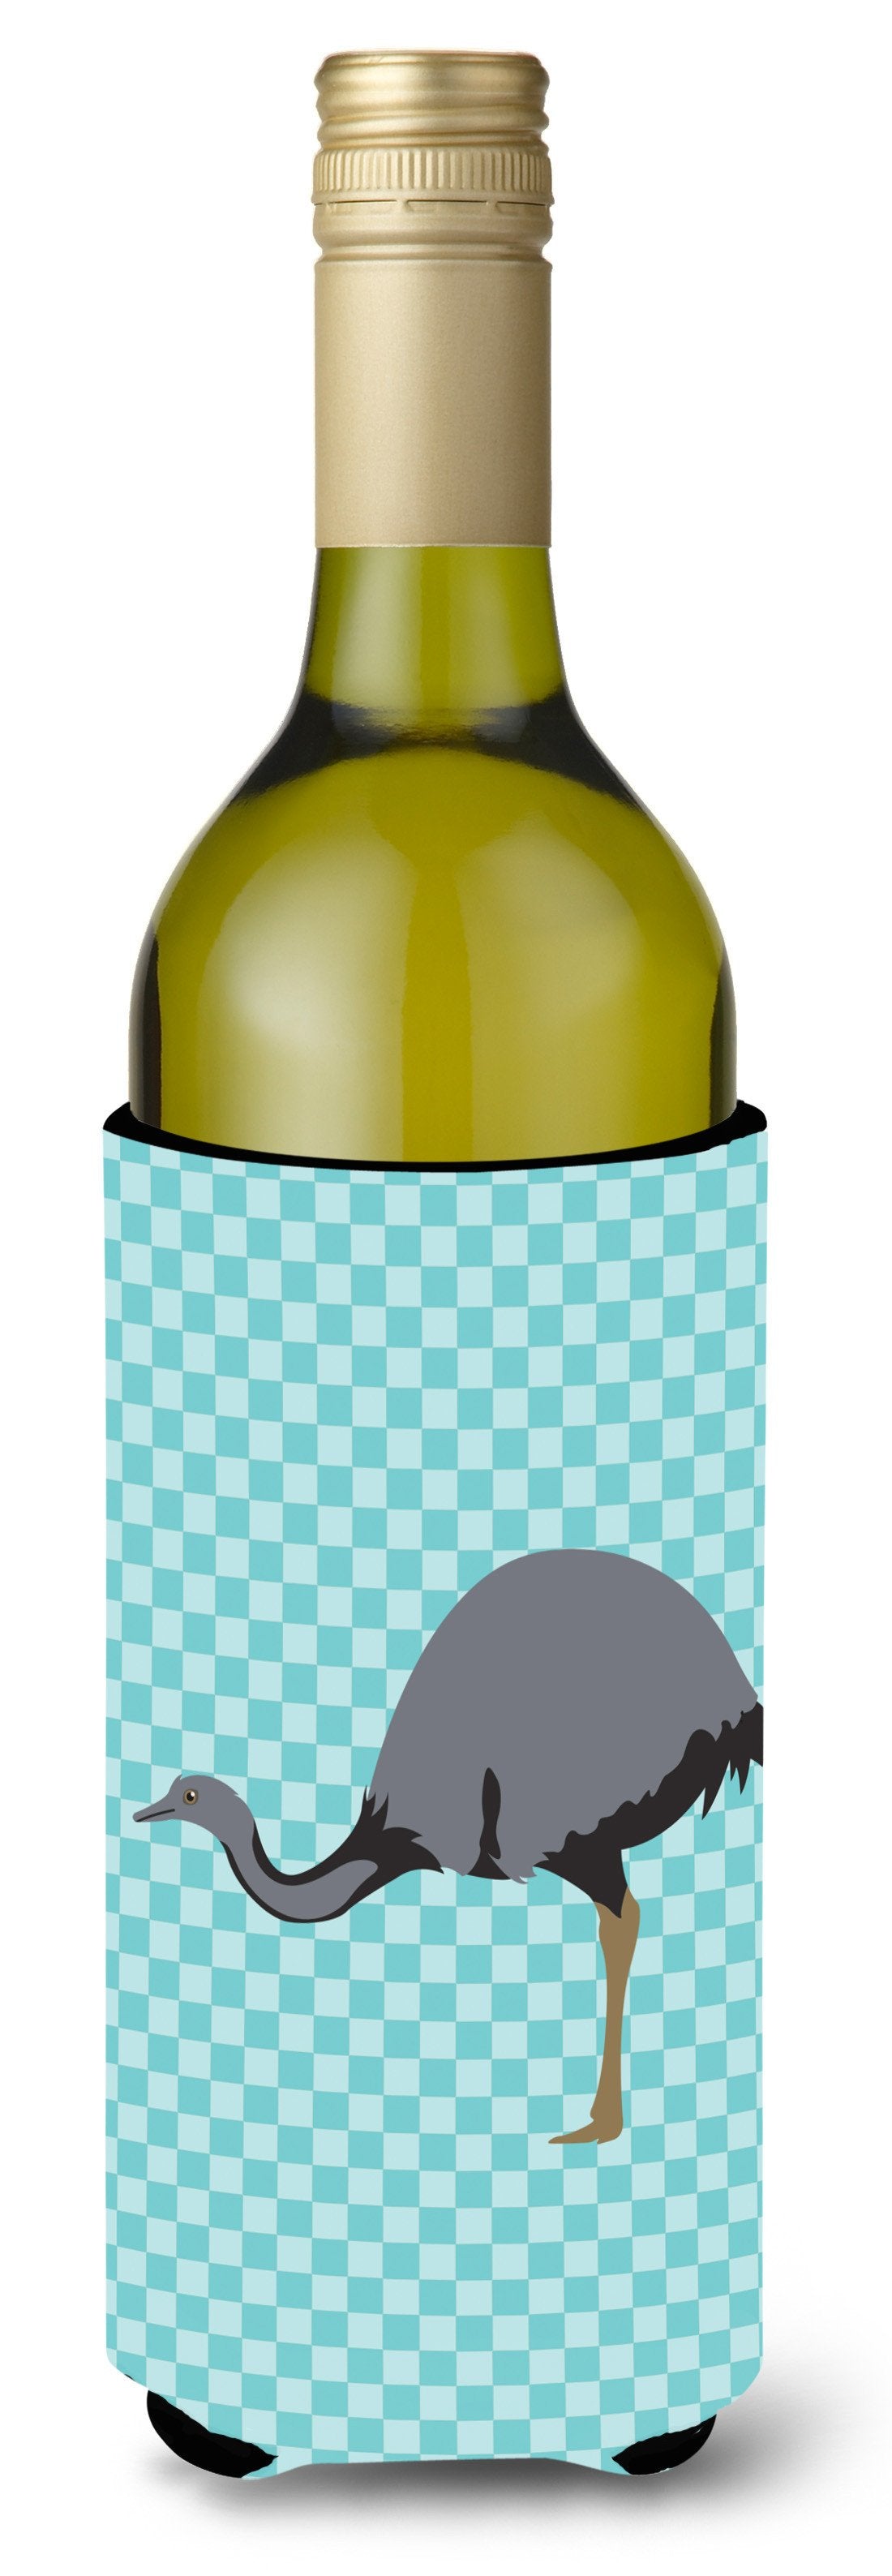 Rhea Blue Check Wine Bottle Beverge Insulator Hugger BB8097LITERK by Caroline's Treasures